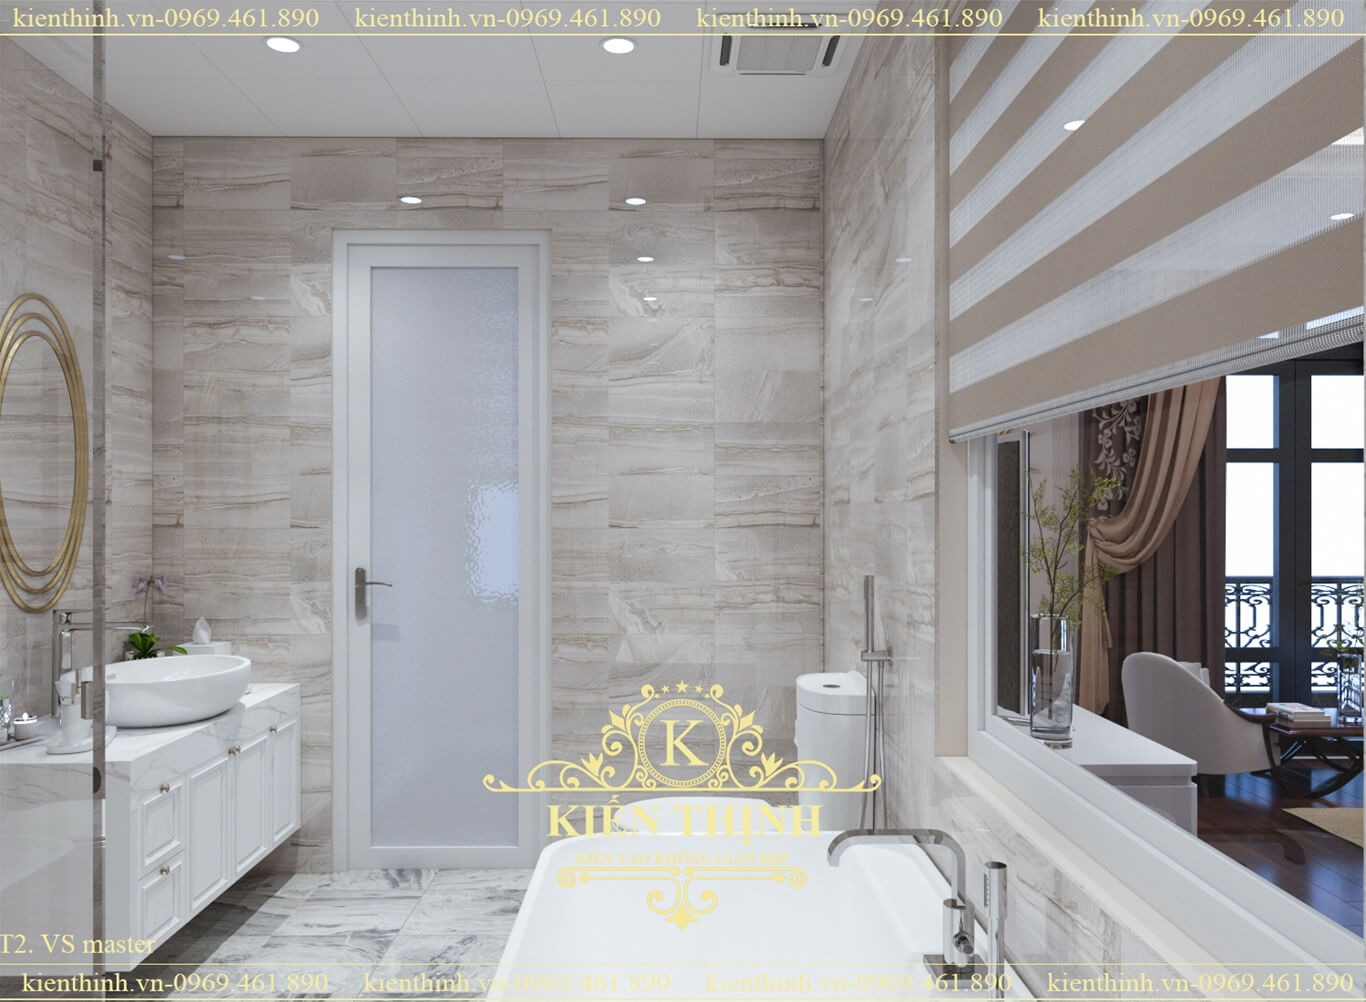 Thiết kế nội thất phòng tắm biệt thự tân đổ điển đẹp và sang trọng luxury bathroom interior